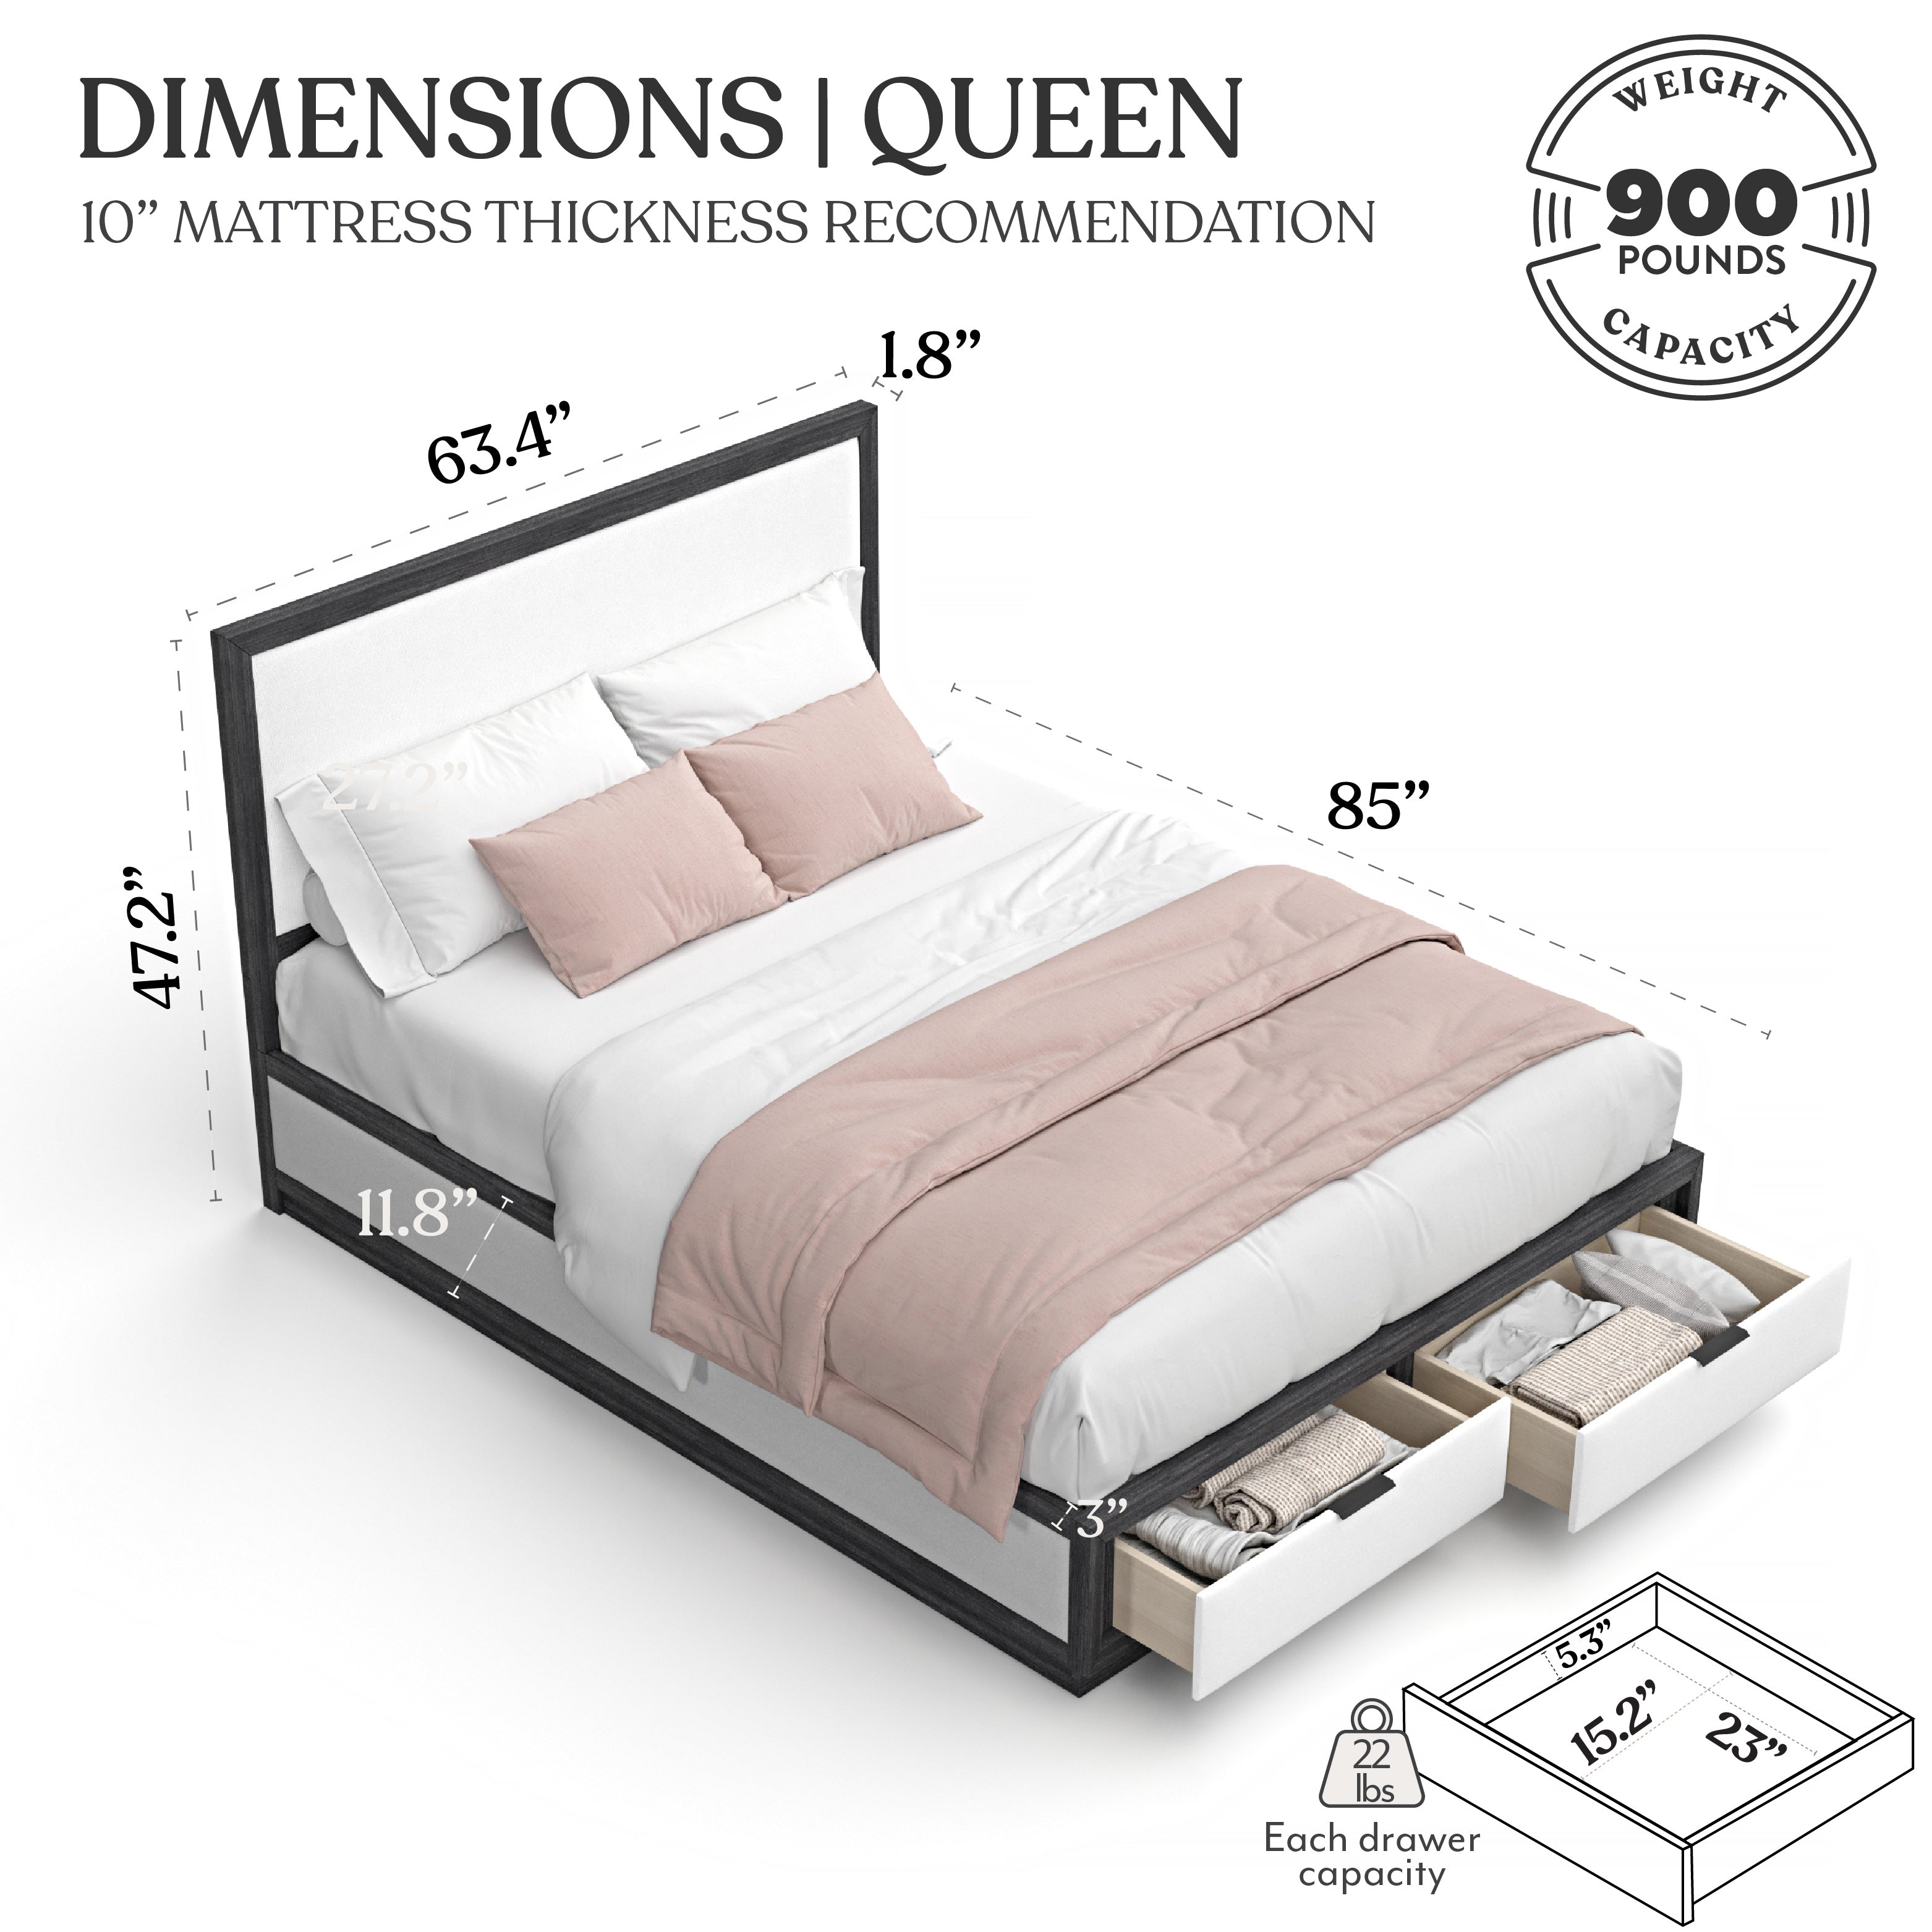 Levi Queen Storage Bed